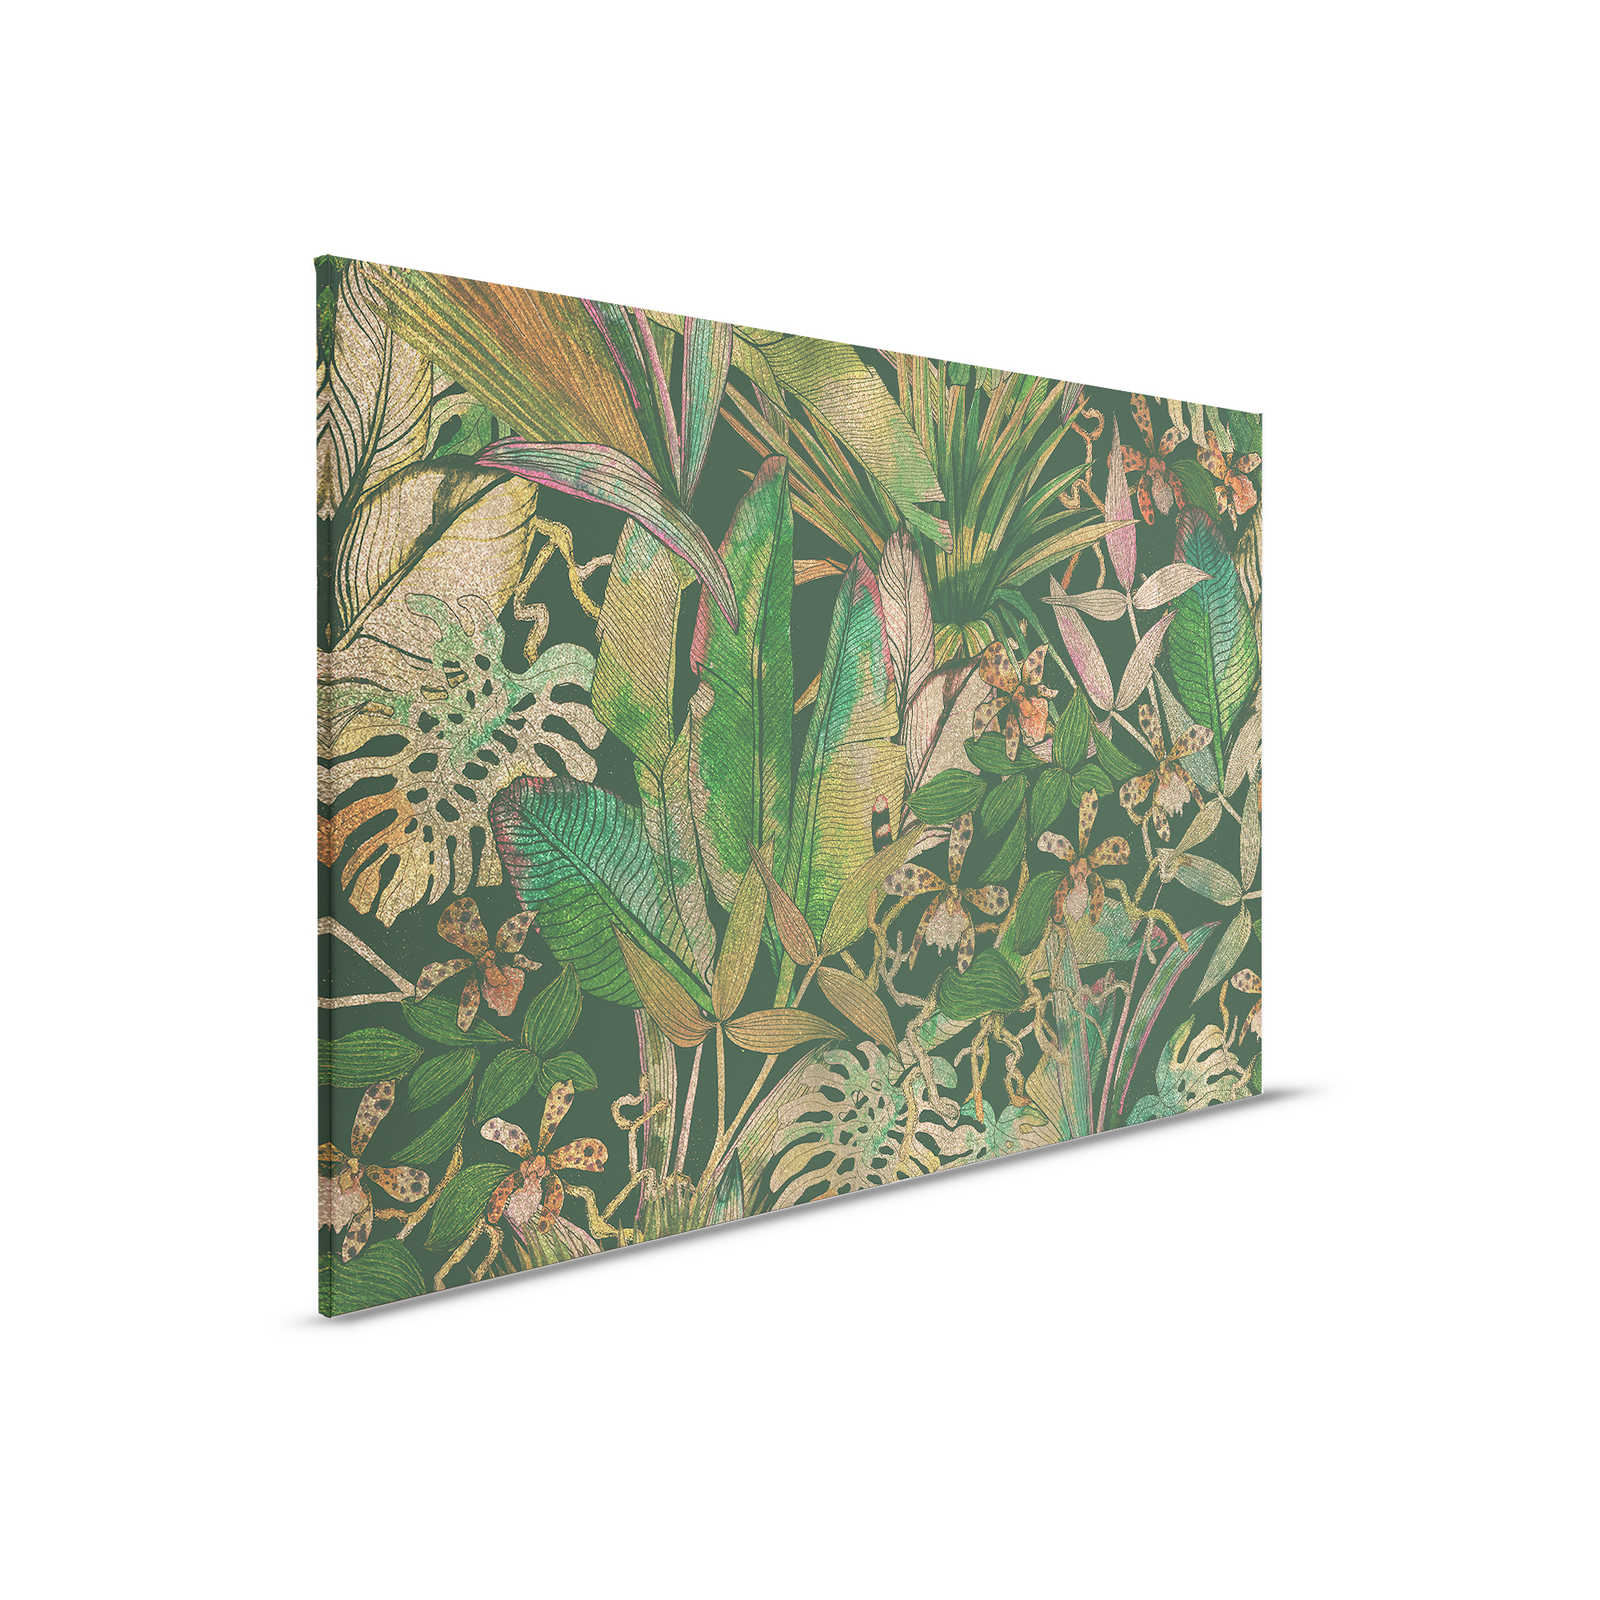 Cuadro en lienzo Motivo selva con hojas y flores - 0,90 m x 0,60 m
